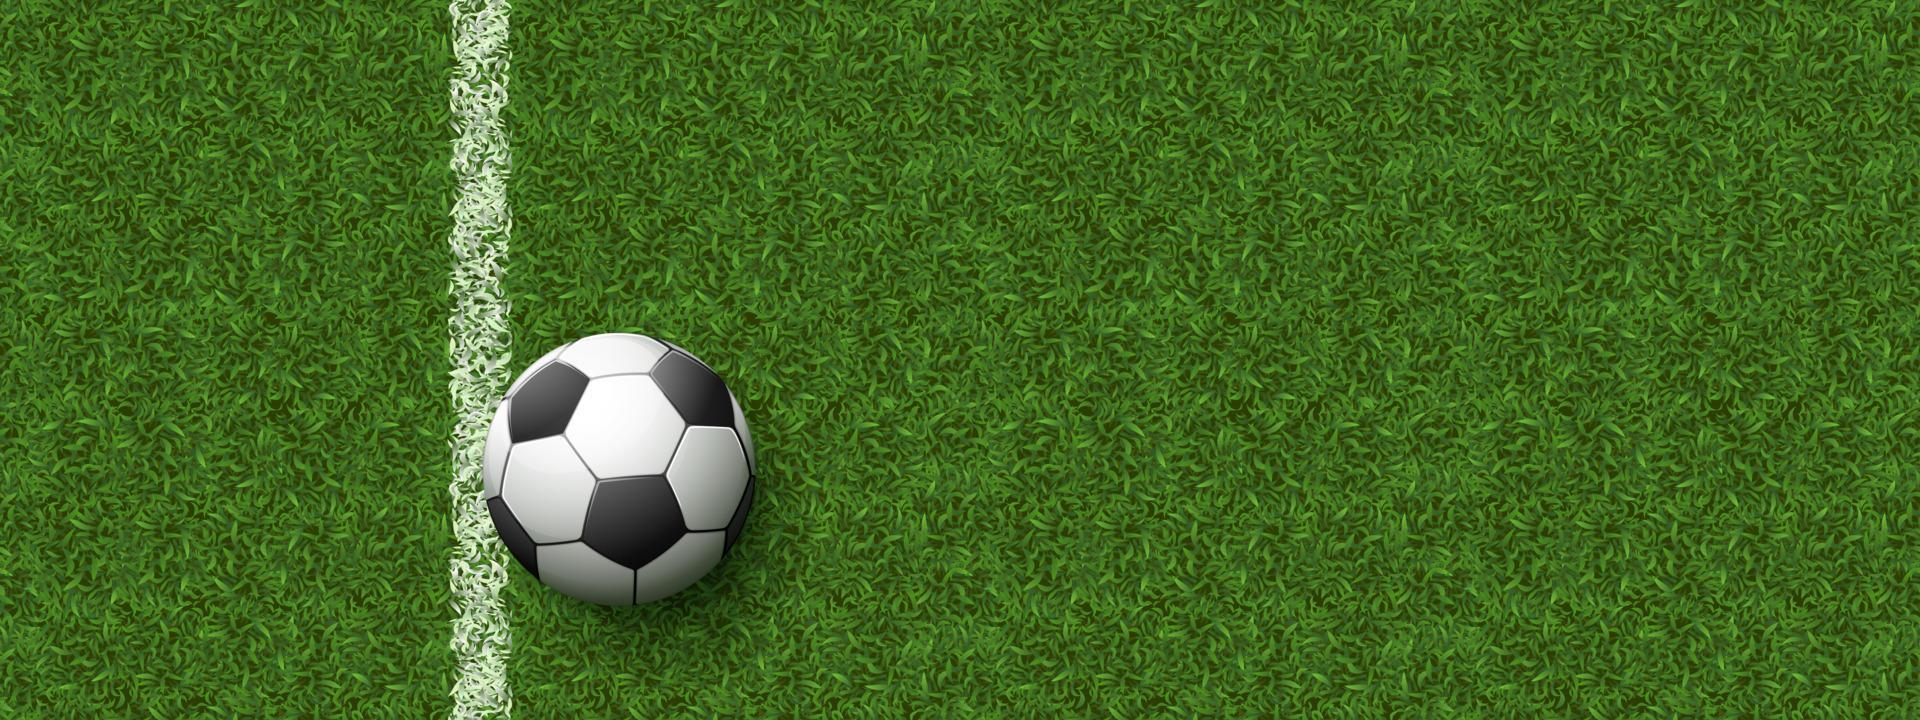 Fußball auf dem Feld mit grünem Gras vektor